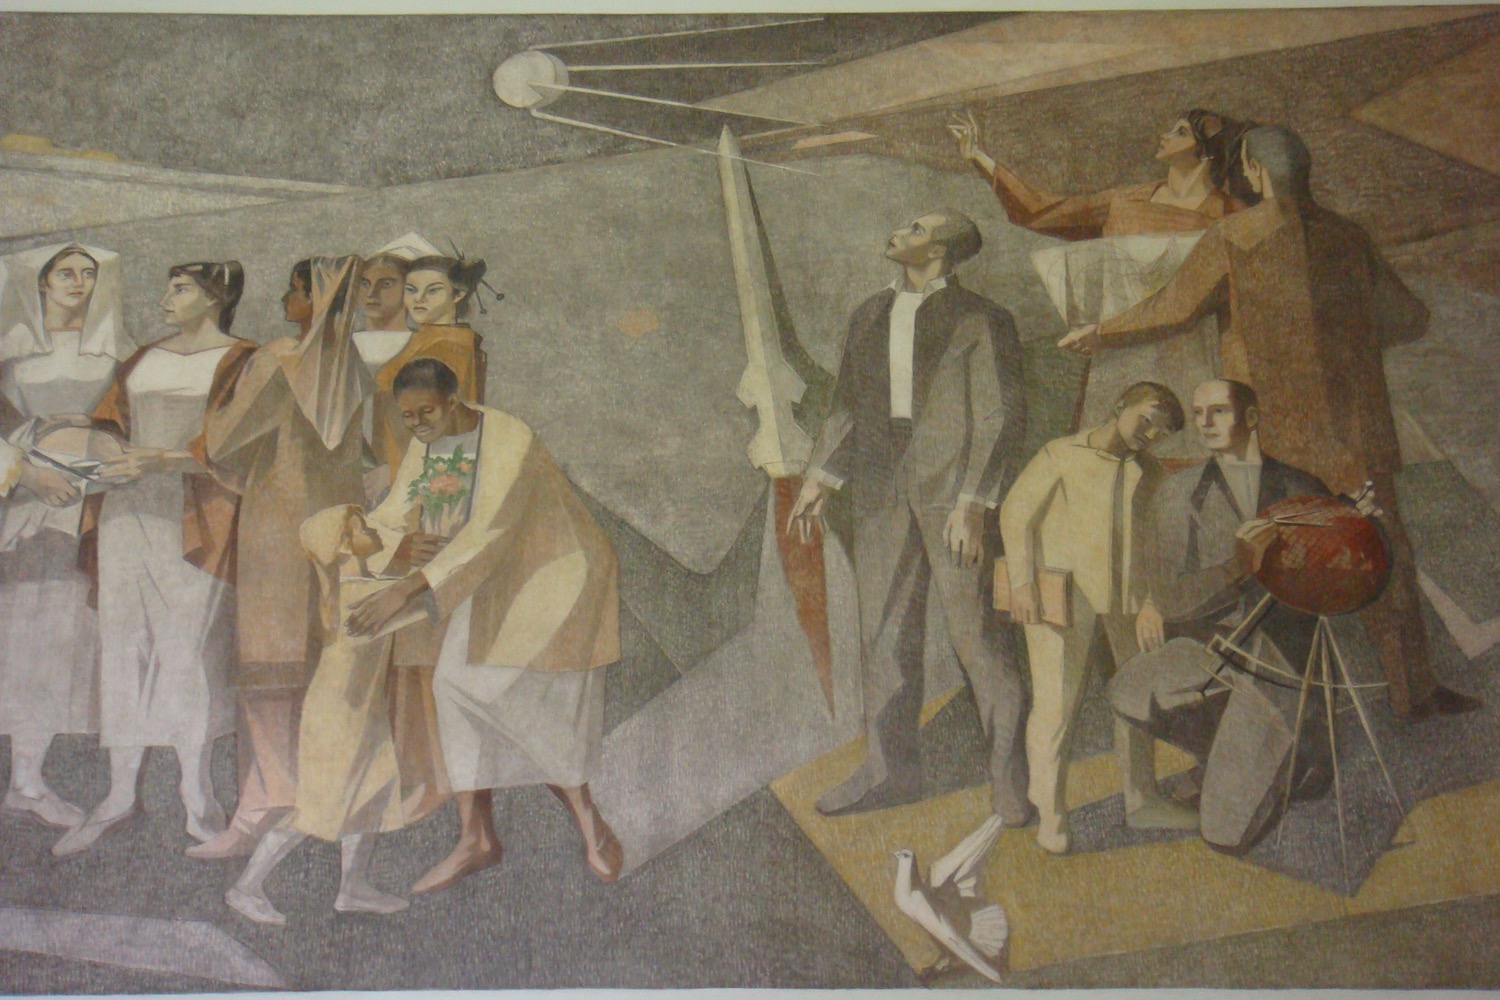 a mural of people walking